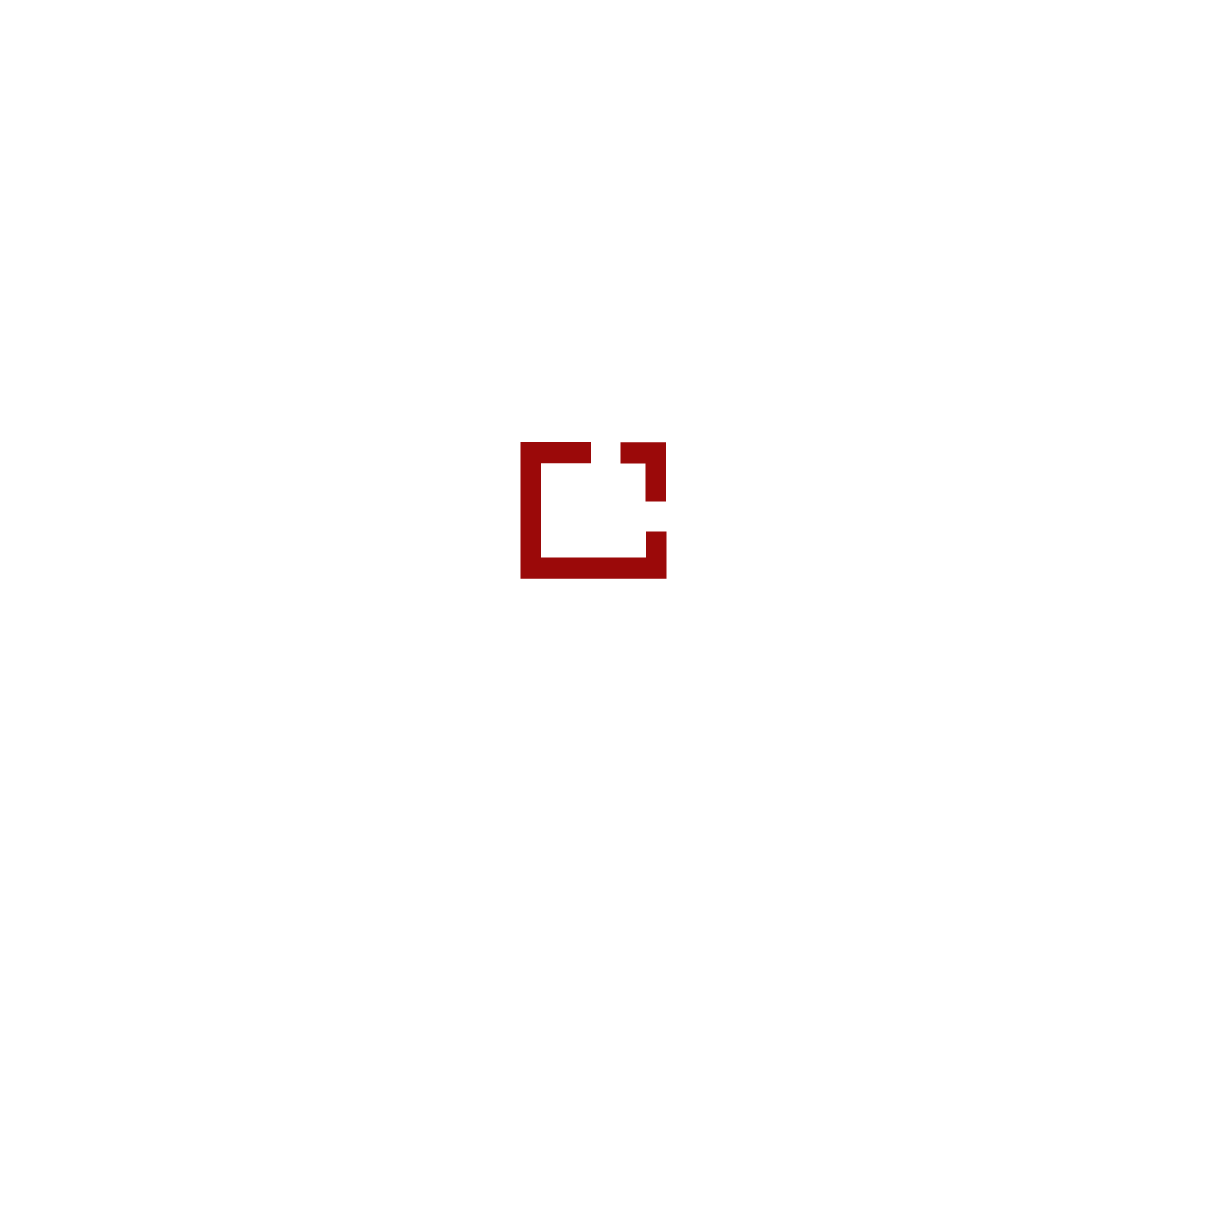 Multi Solution Seguros - Soluções em Seguros